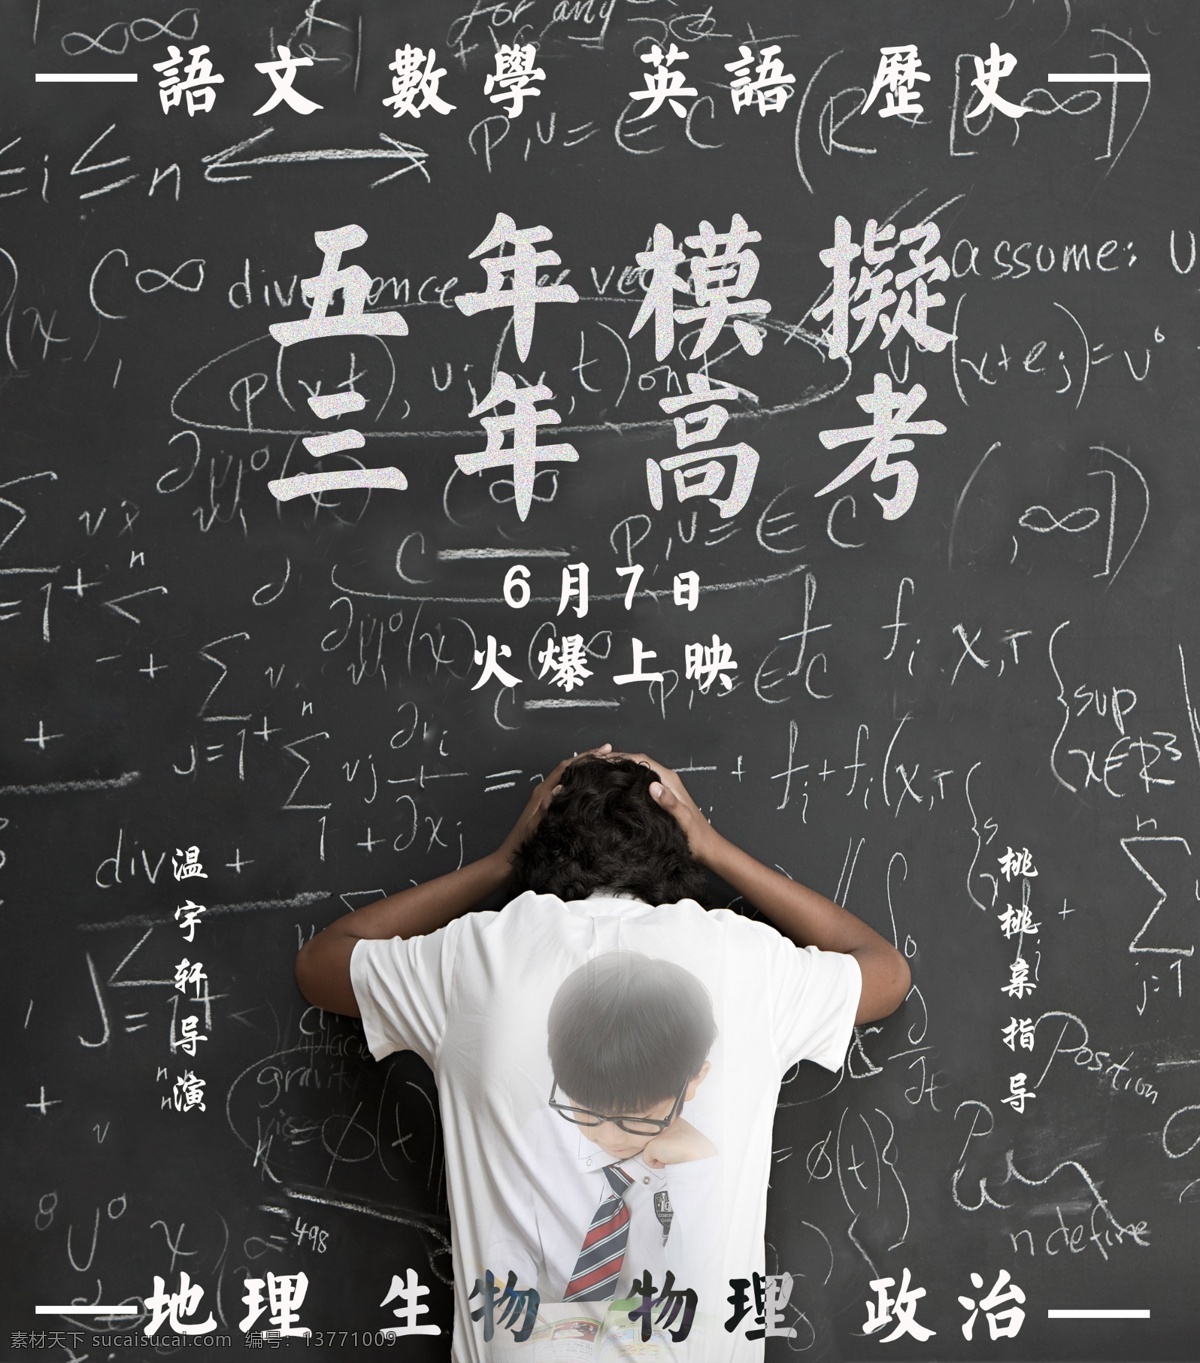 三 年 模拟 五 高考 电影海报 数学 英语 历史 黑板 6月7日 语文 地理 生物 物理 政治